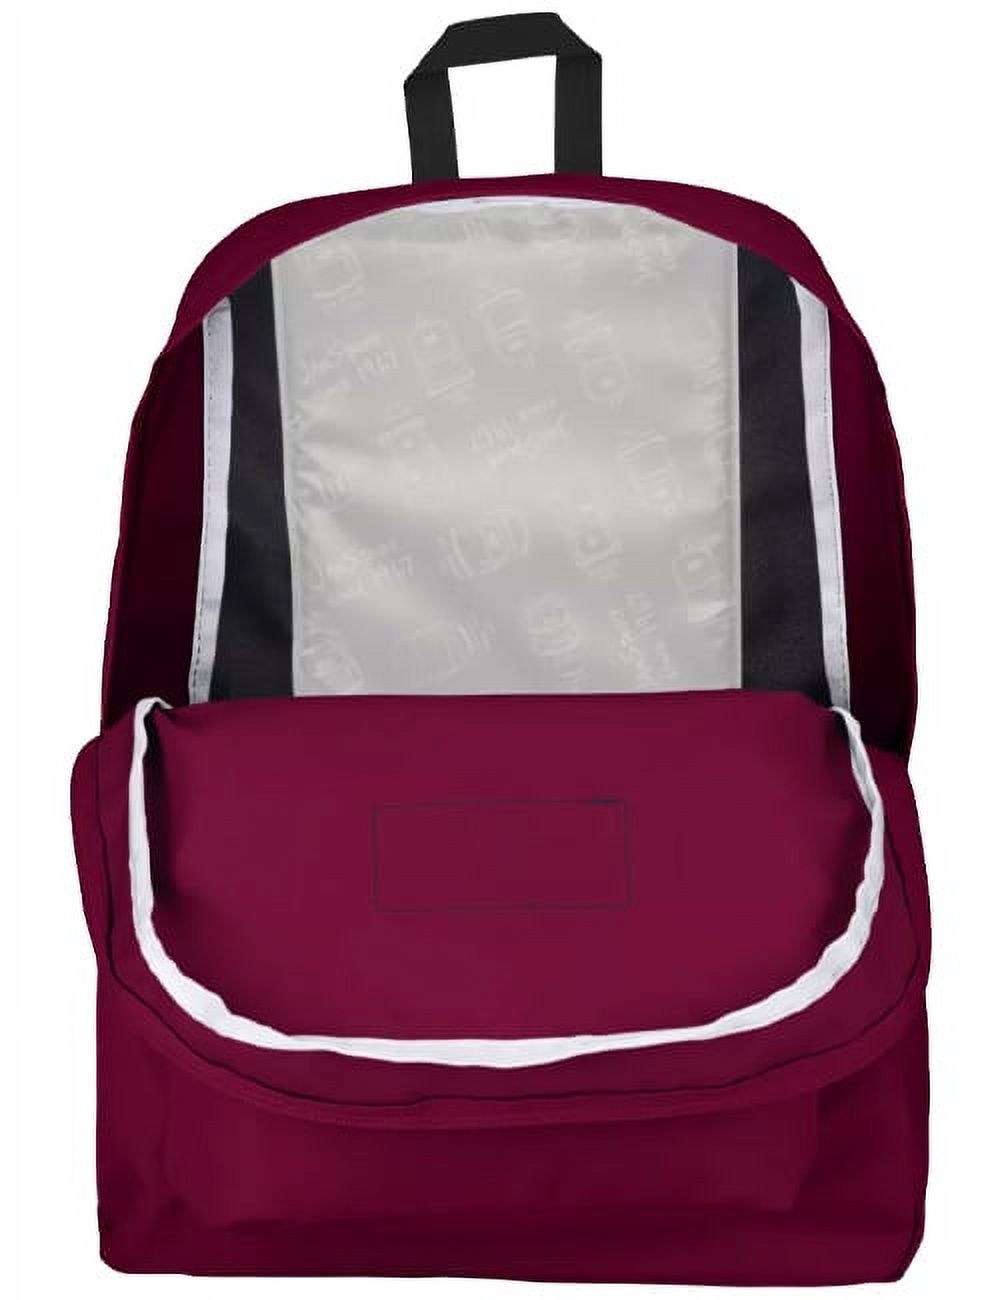 JanSport Unisex SuperBreak Backpack School Bag Russet Red - image 2 of 3